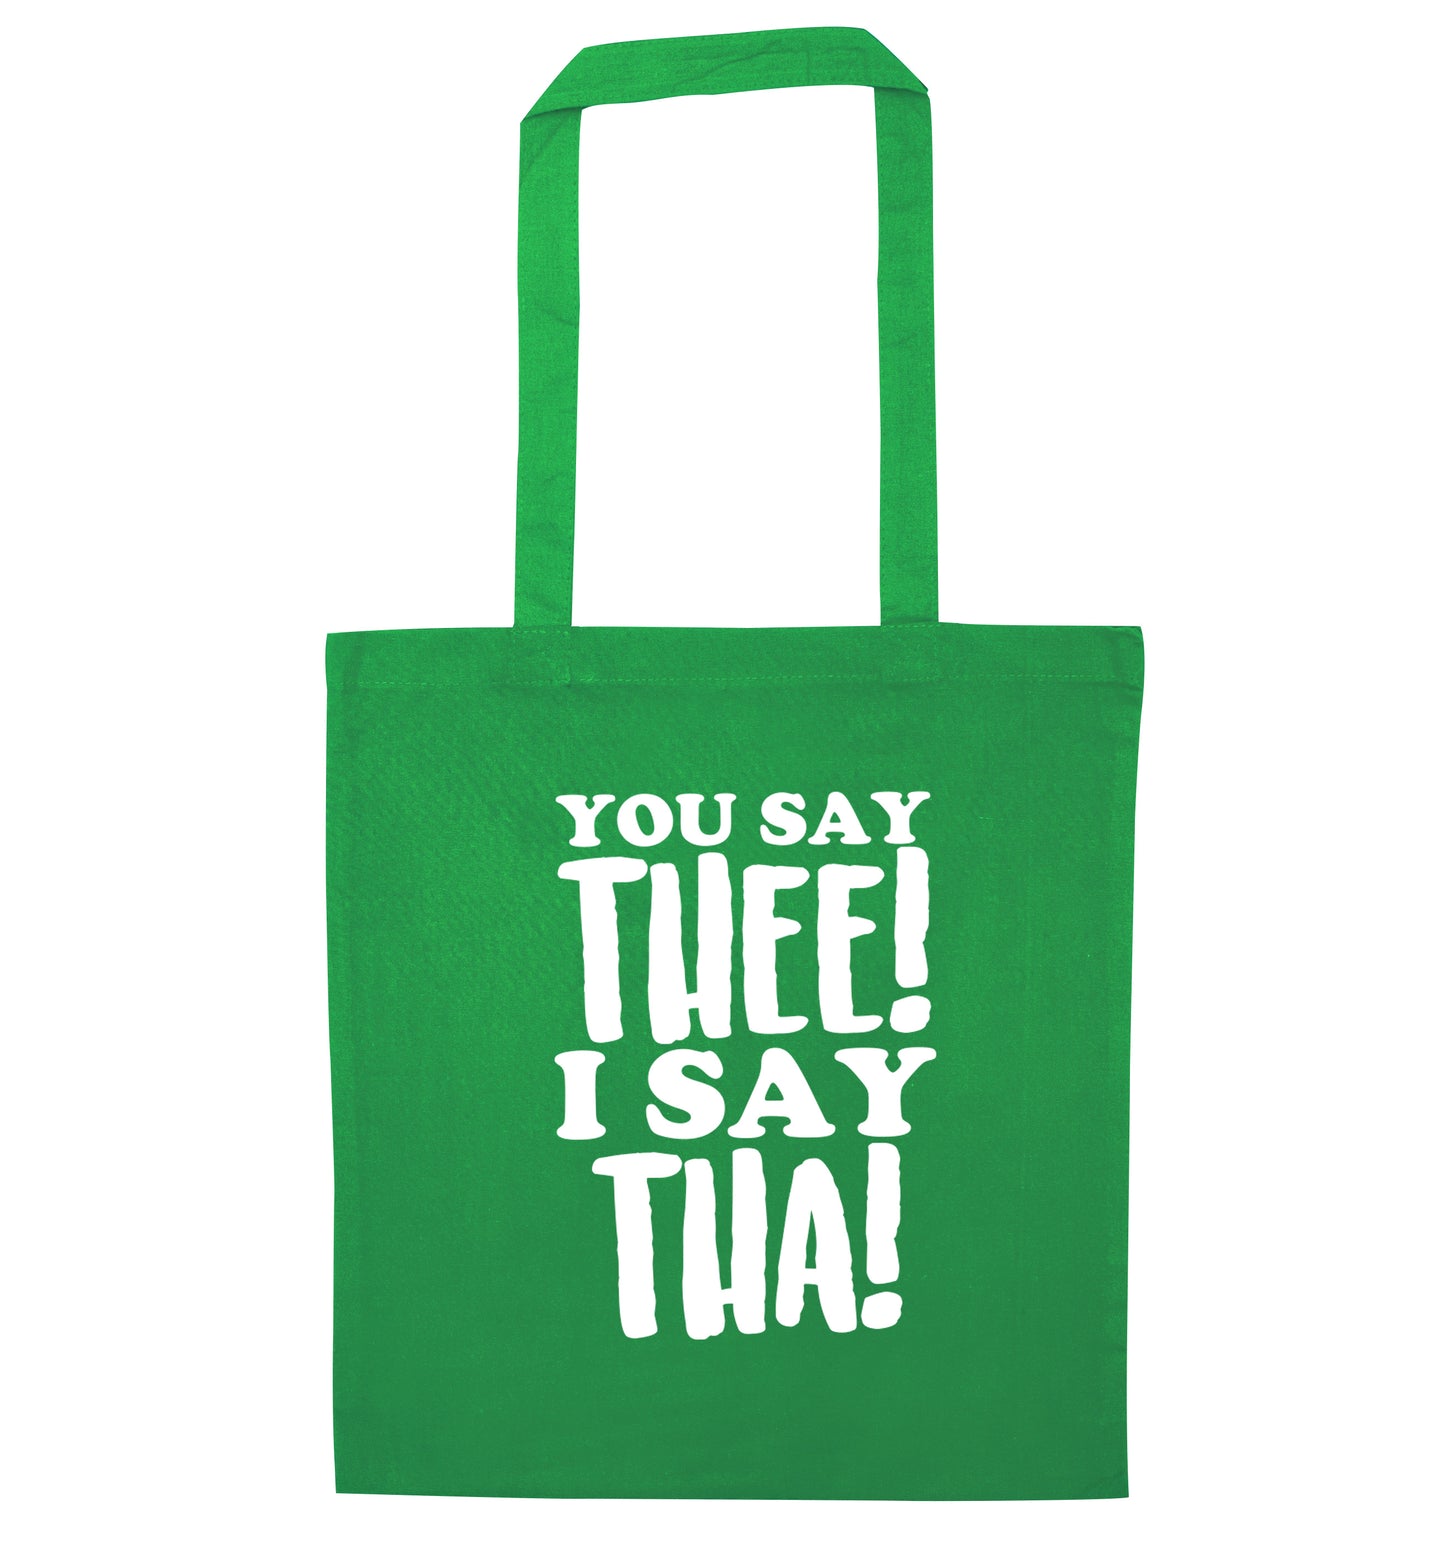 You say thee I say tha green tote bag